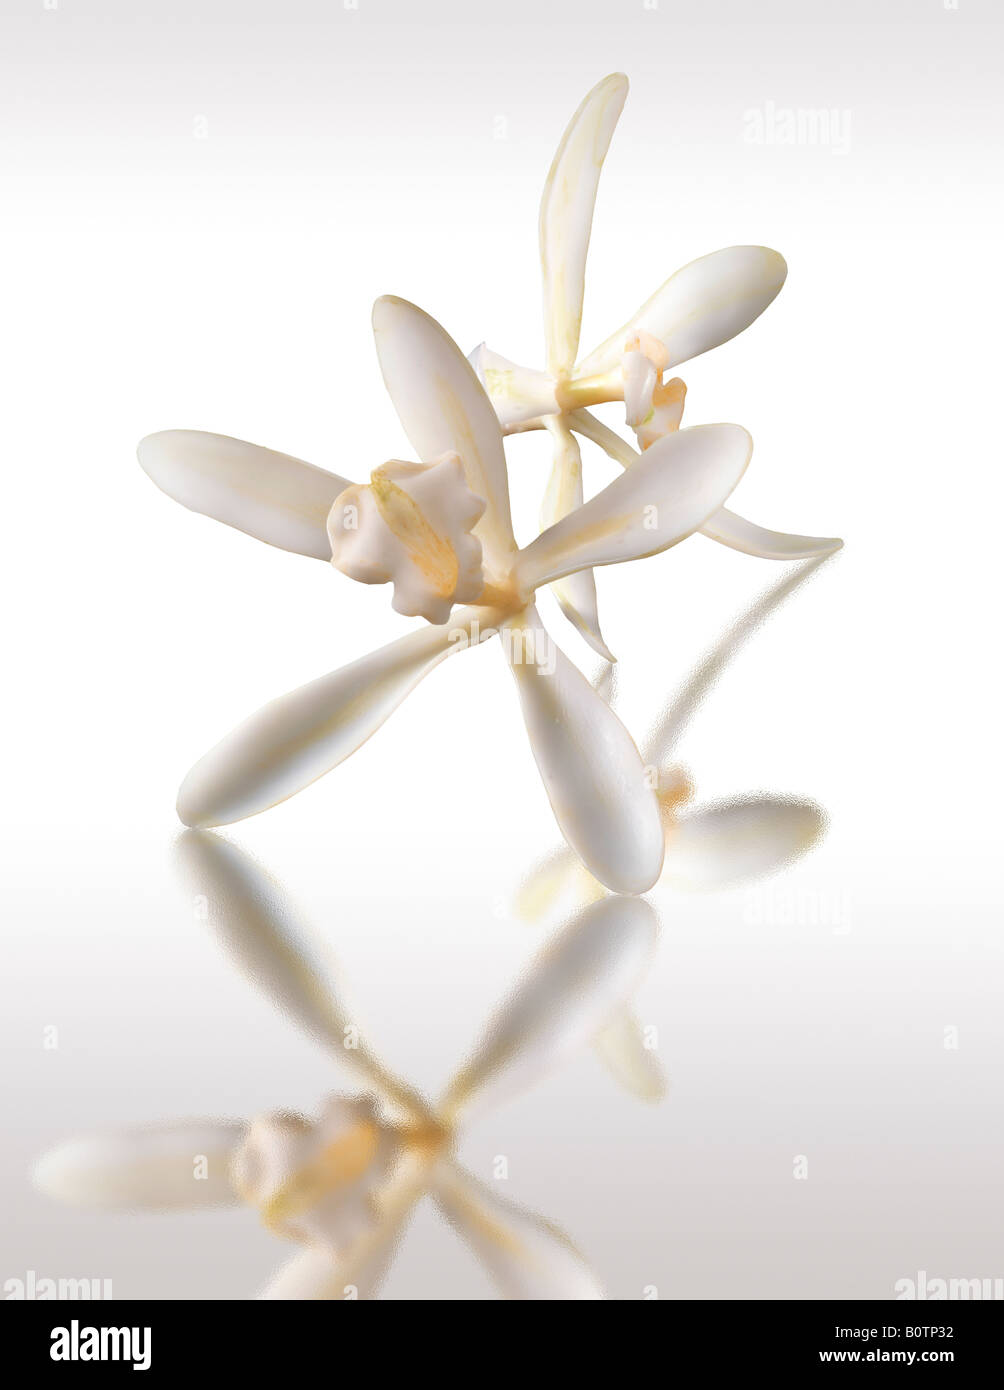 flor de vainilla blanca, planifolia de vainilla, de cerca aislada sobre fondo blanco, contra blanco Foto de stock